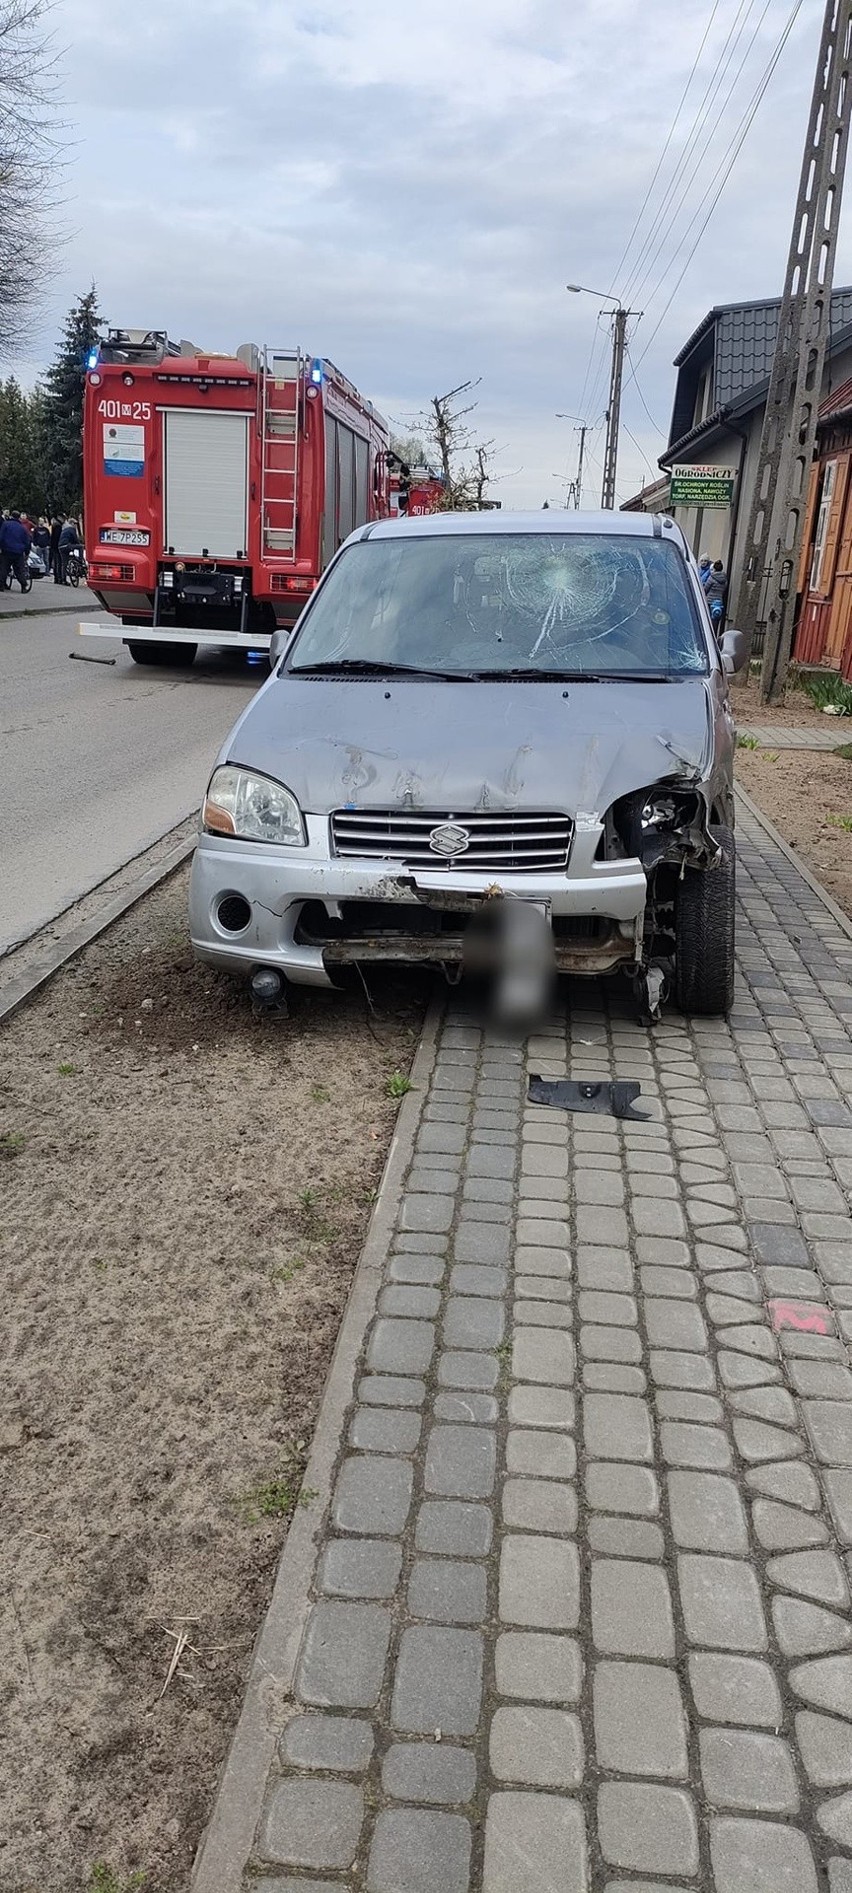 Wypadek w Przybyszewie w gminie Promna. 20-latek w suzuki wjechał na chodnik i potrącił pieszą. Kobieta w szpitalu